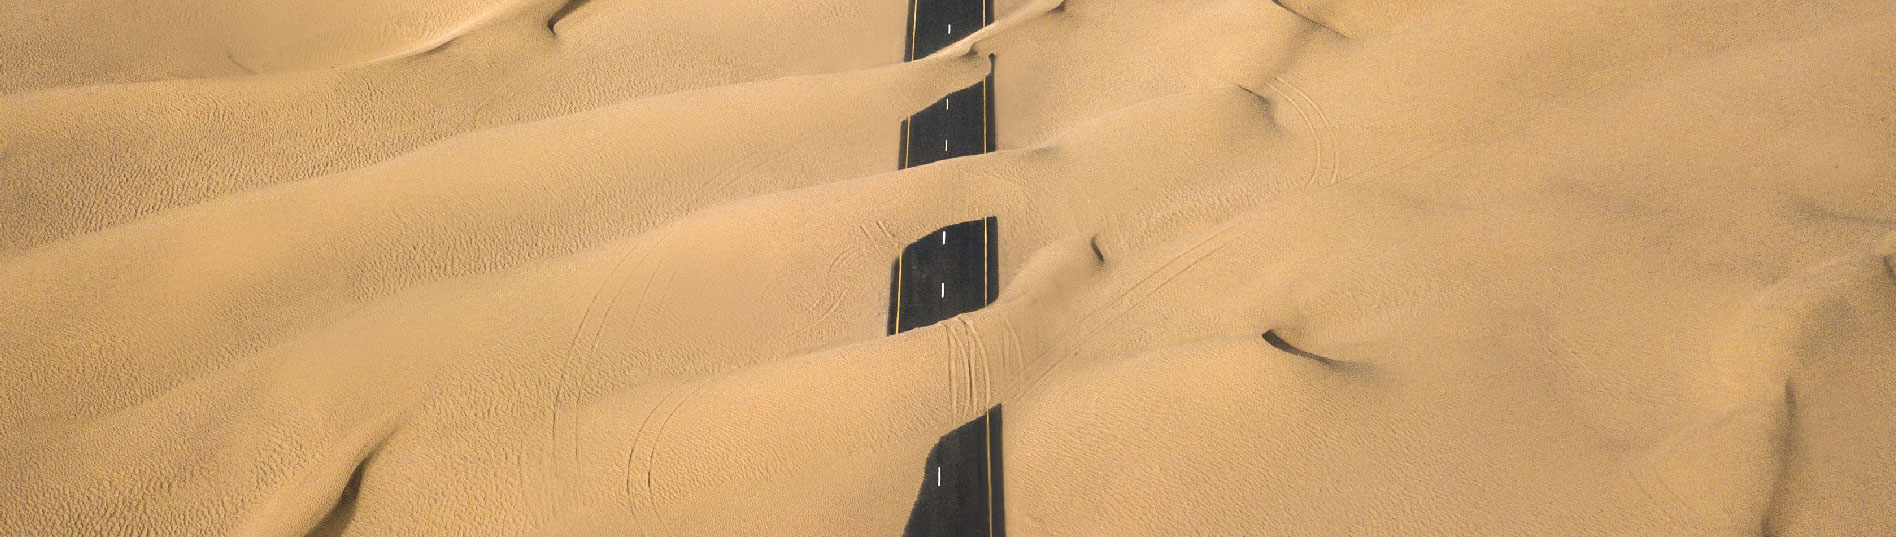 Photo montrant une route presque totalement recouverte par le sable